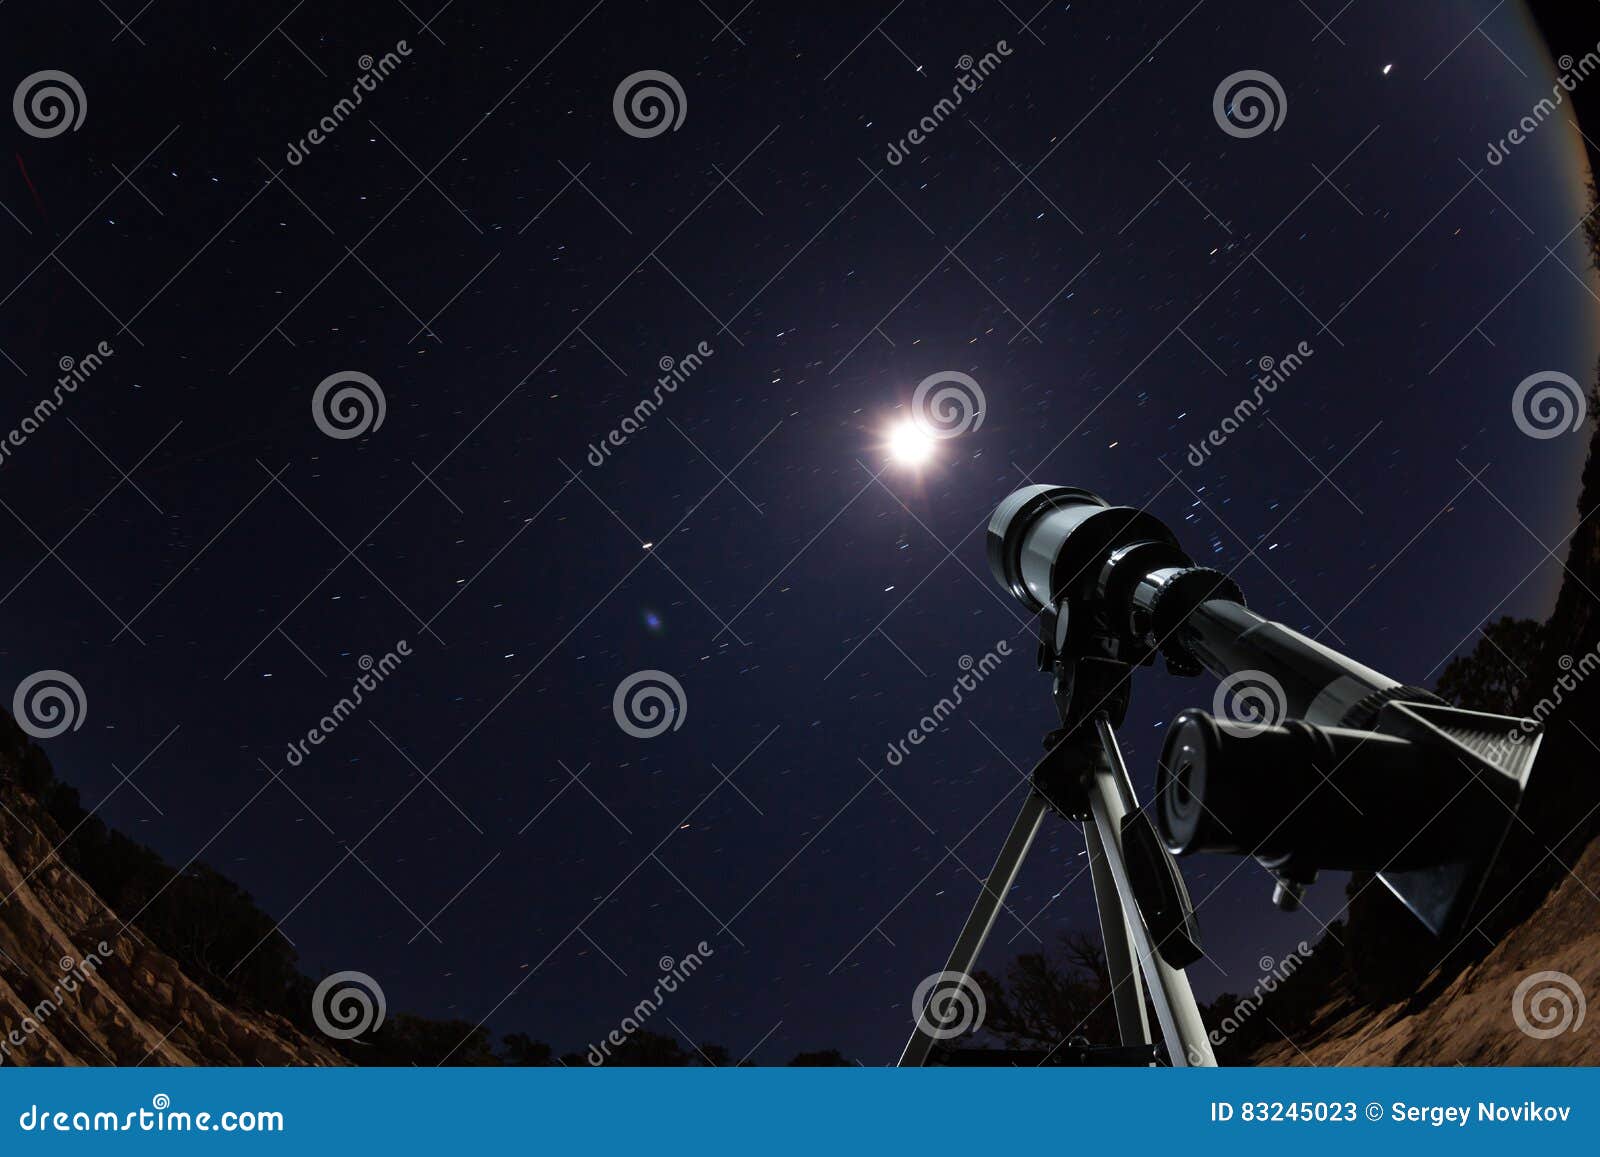 Teleskop über nächtlichem Himmel mit Sternen und Mond. Schieben Sie Stellung im Wüstenhochgebirge in der Nacht ineinander, die auf den klaren Himmel mit Sternen und Mond zeigt